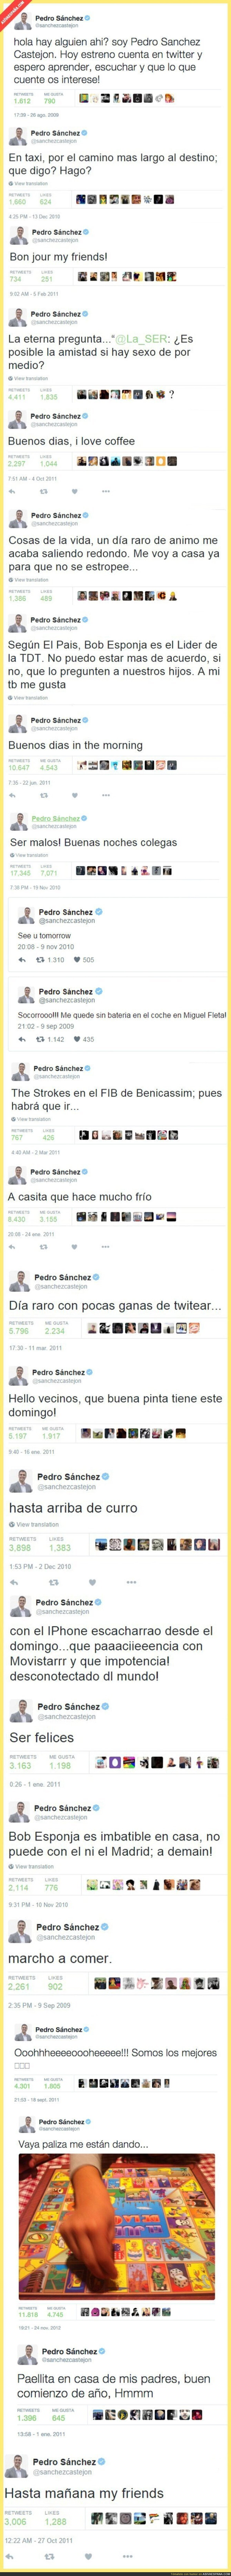 Los mejores tuits antiguos de Pedro Sánchez (PSOE) que están dando al vuelta a internet